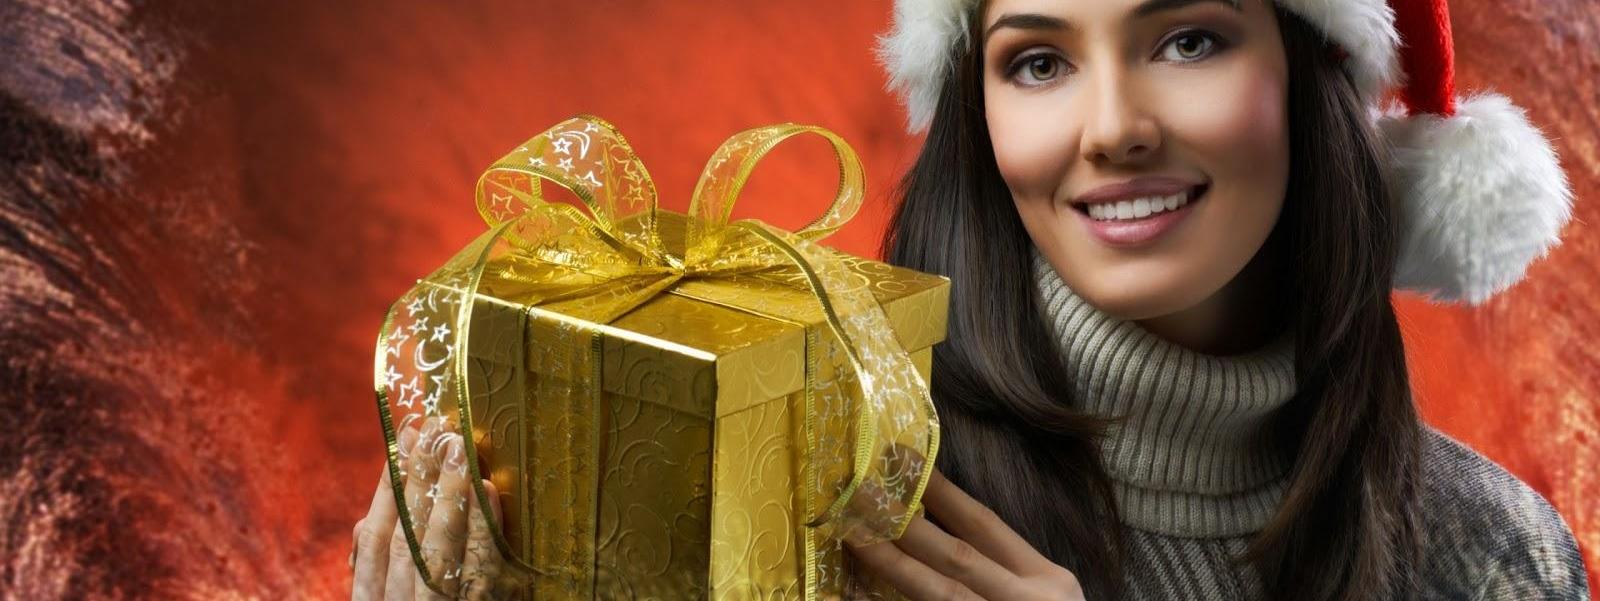 Navidad picante _ Los regalos eróticos que te harán brillar